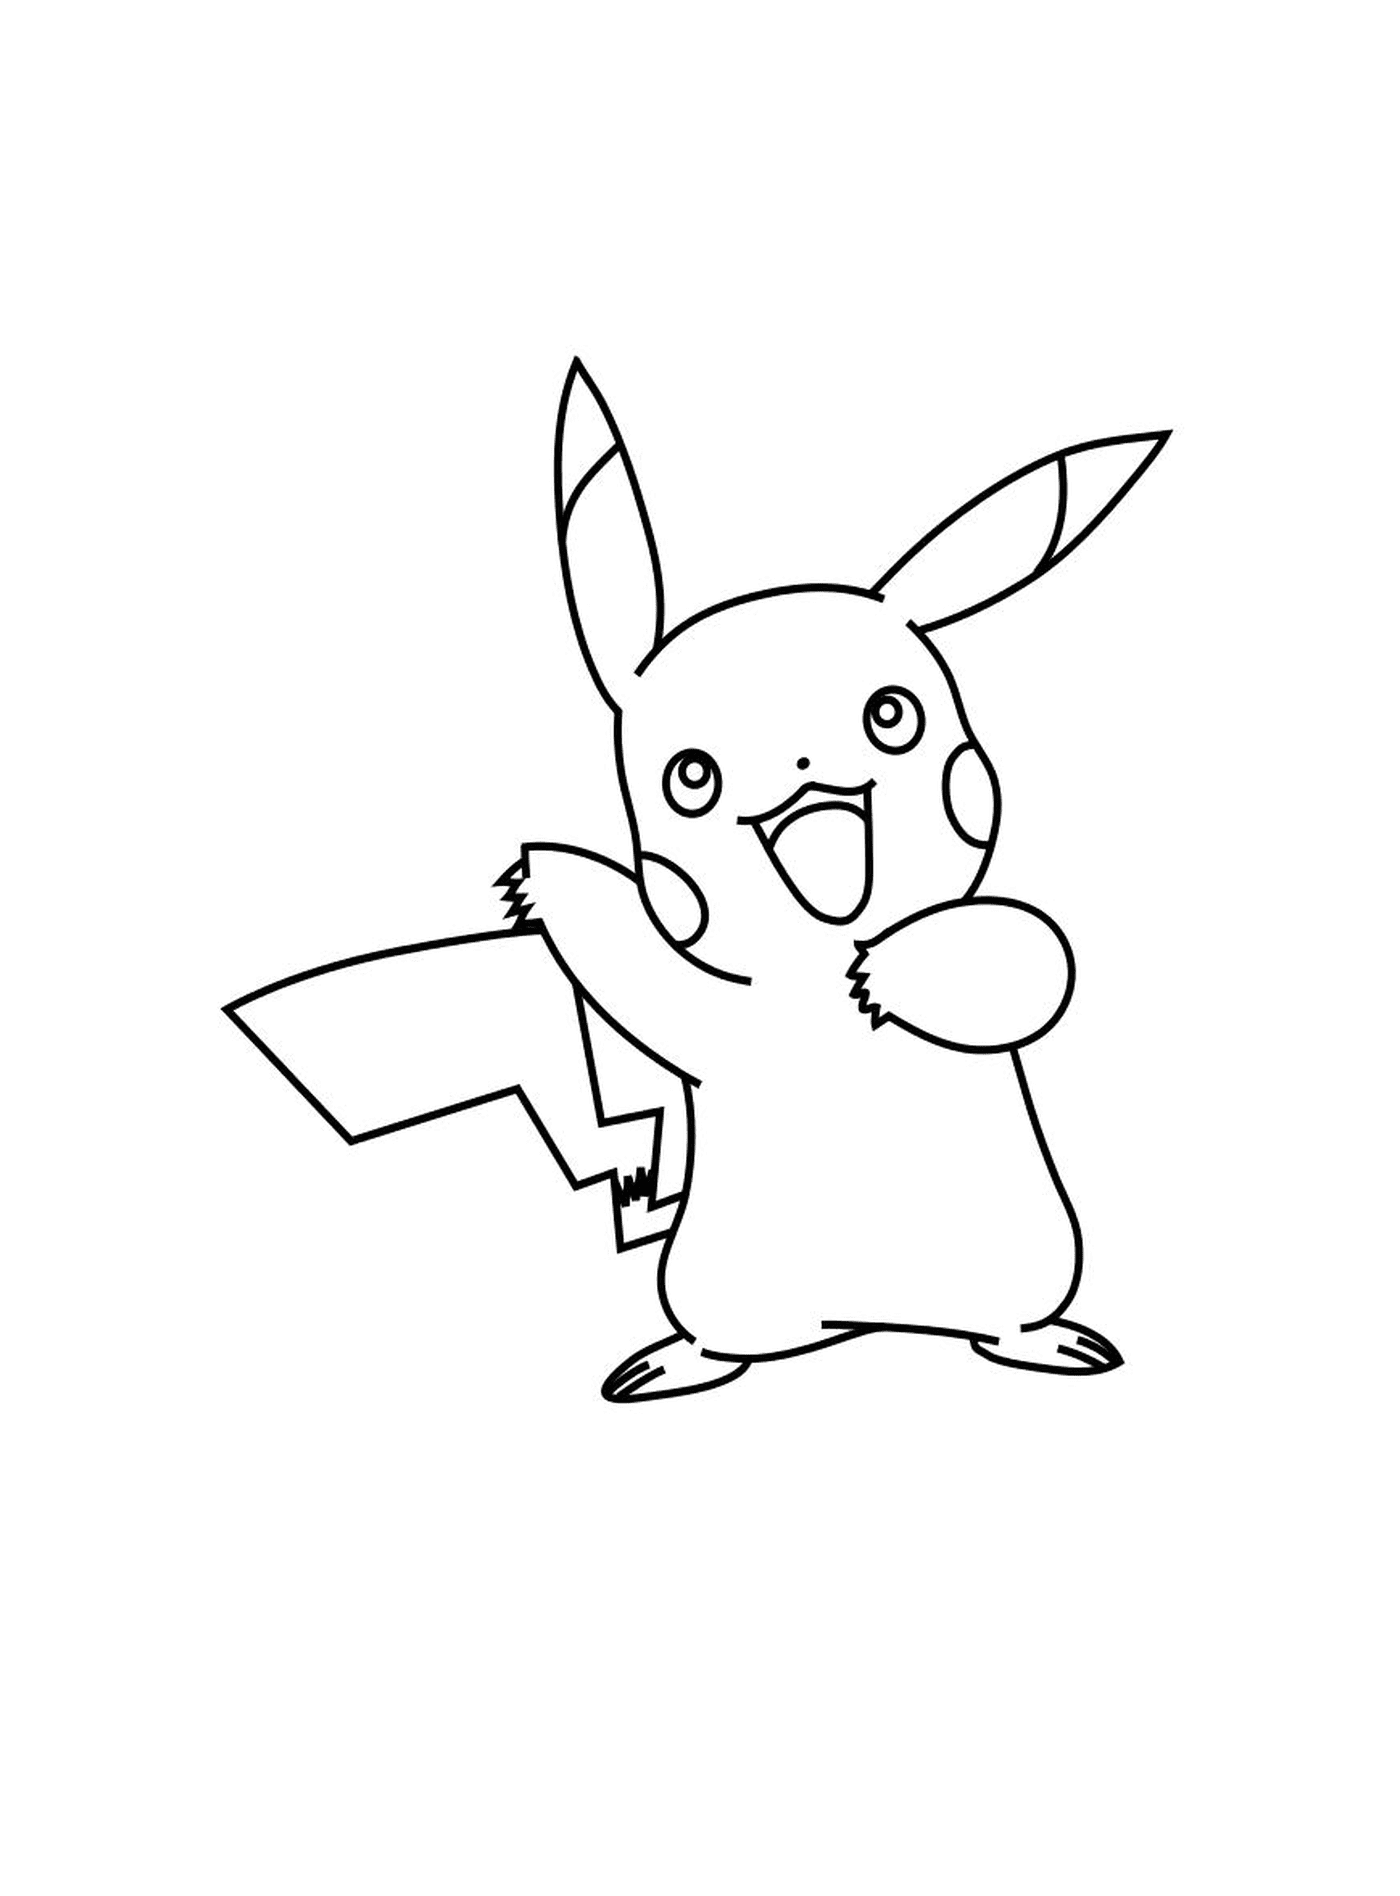   Pikachu dans le monde Pokémon XY 